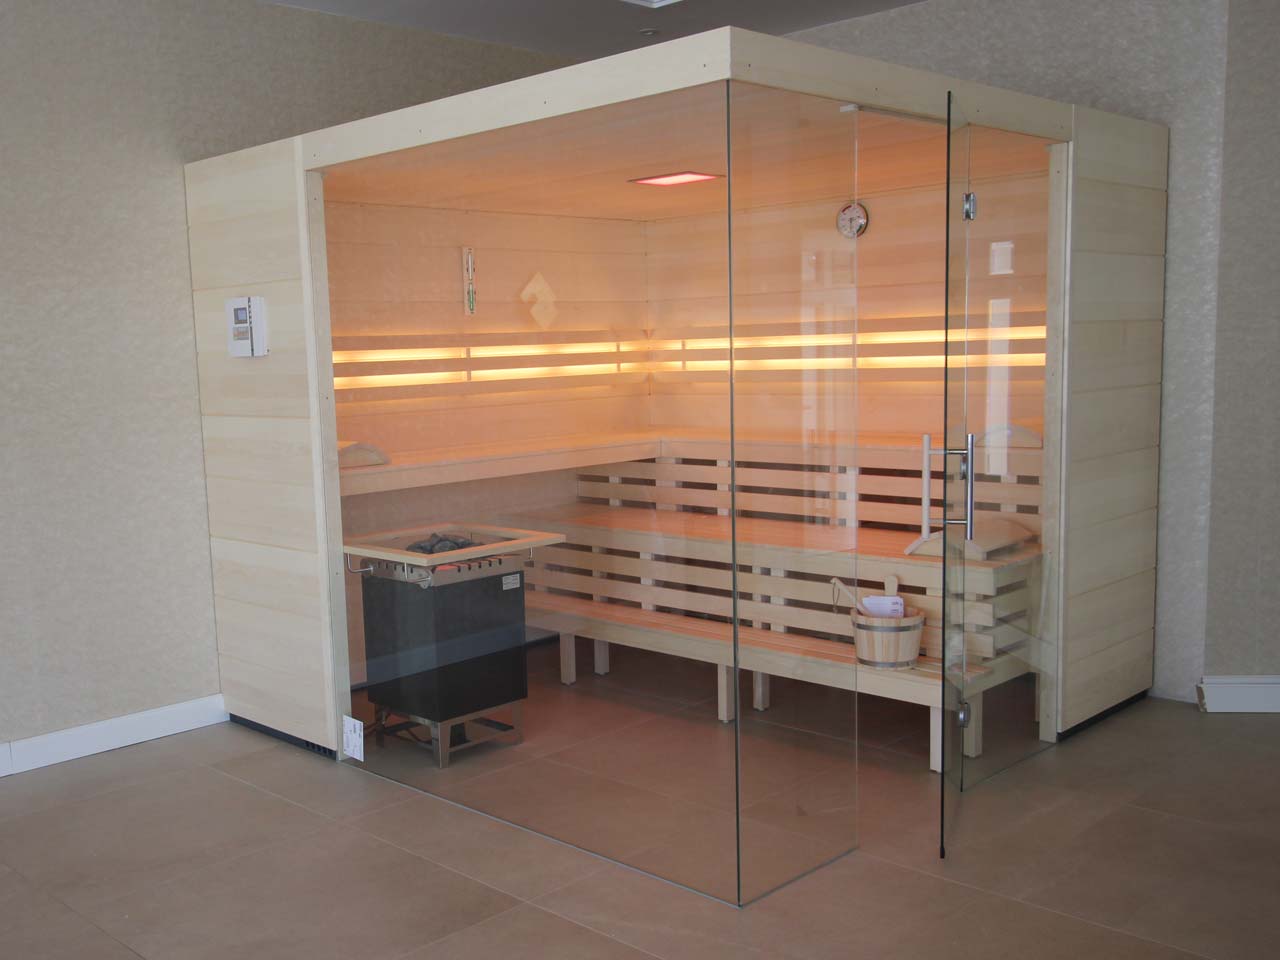   Element-Sauna in Espe  Rückenlehnen mit LED Beleuchtung